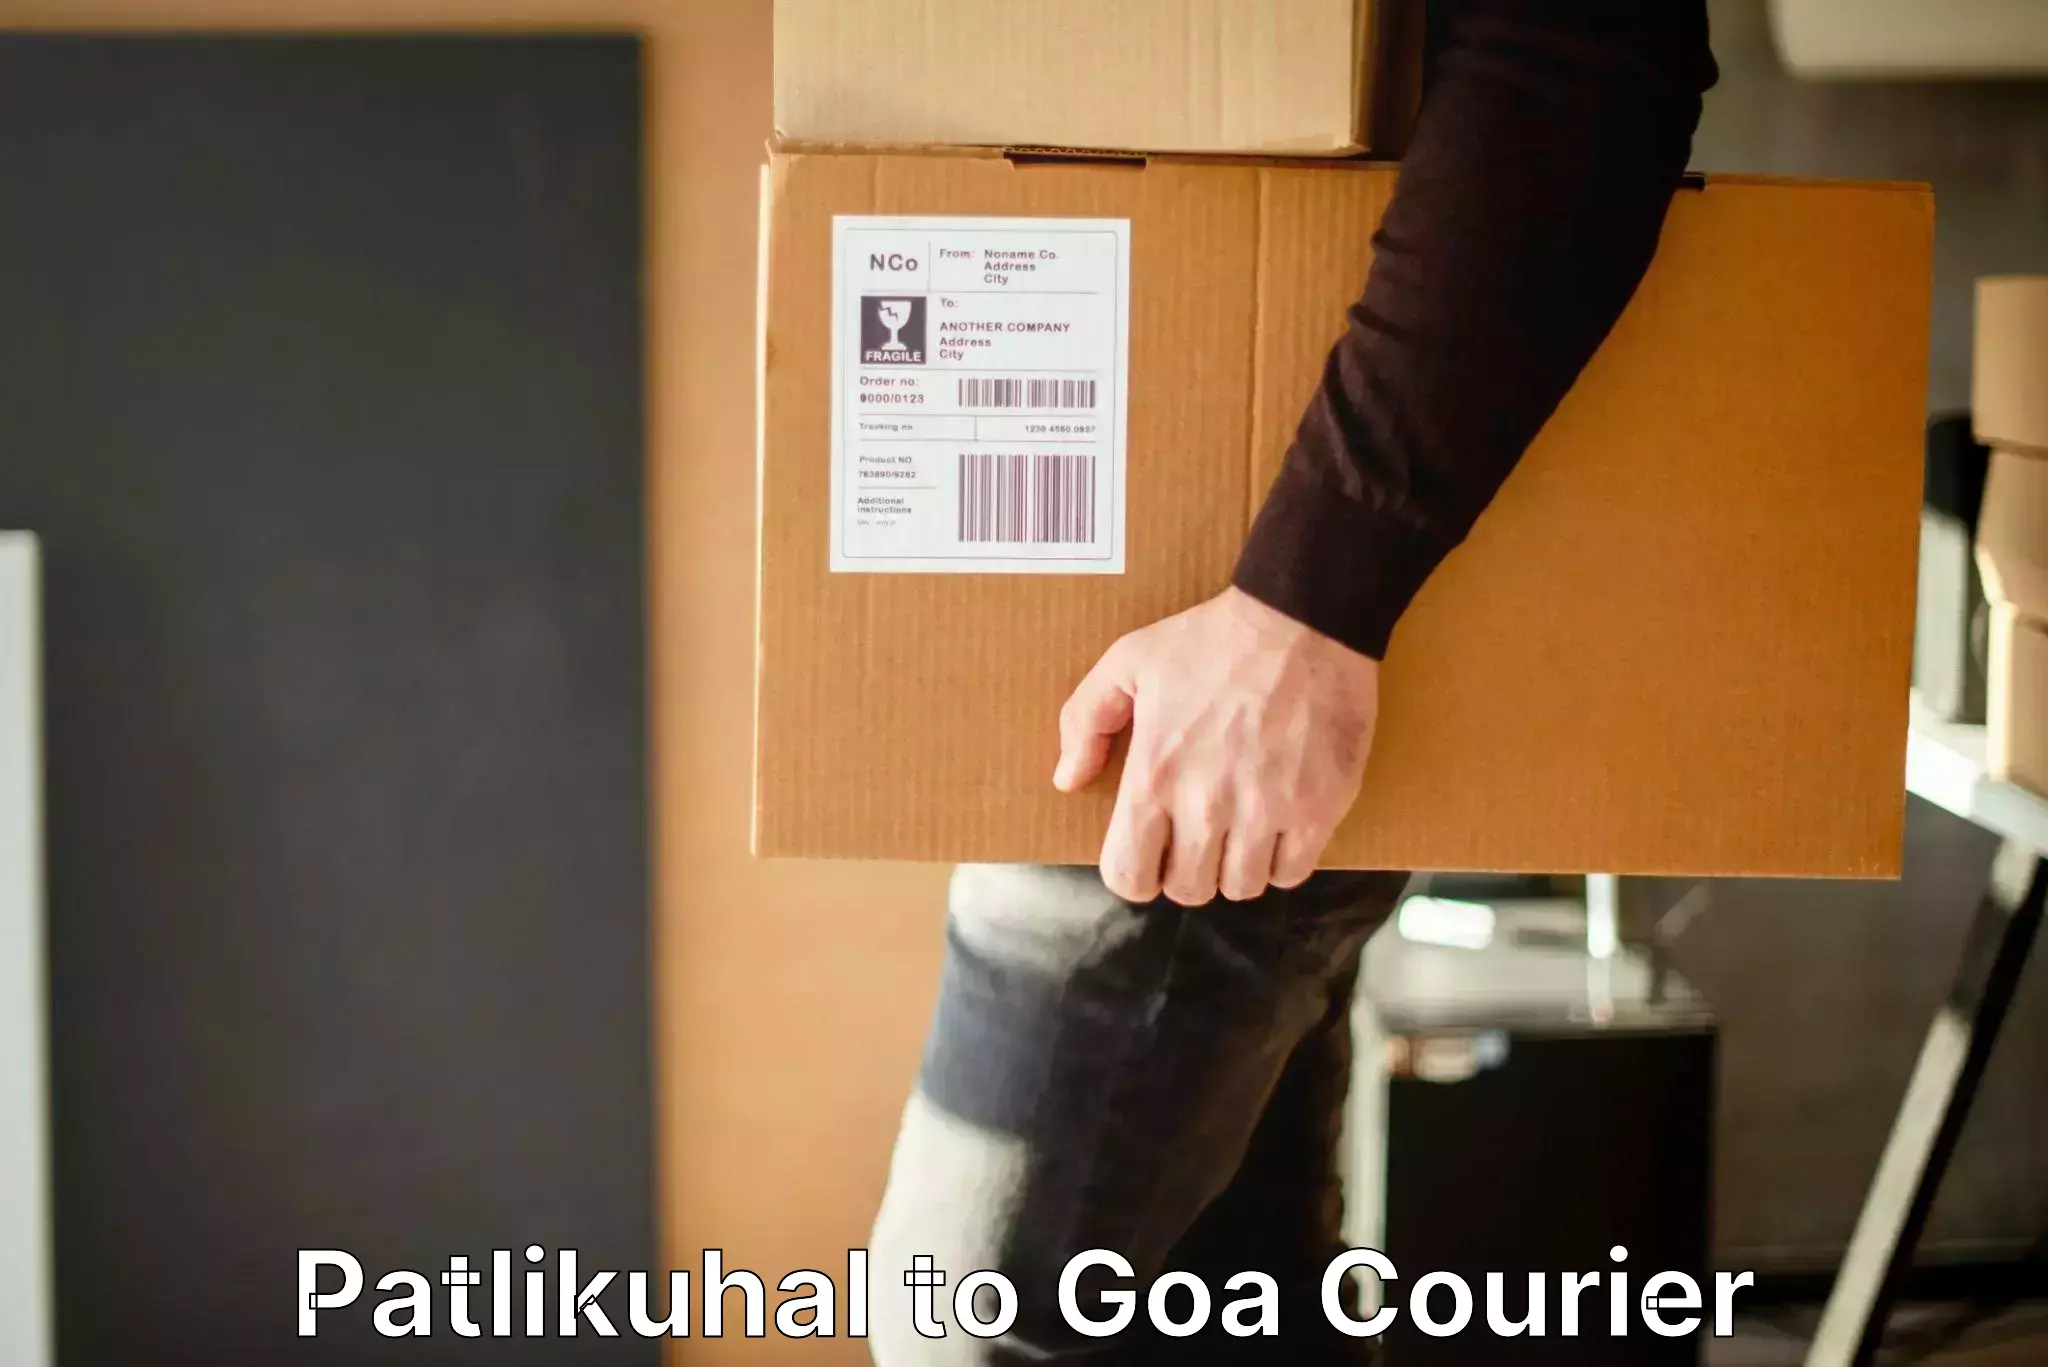 Automated luggage transport Patlikuhal to Goa